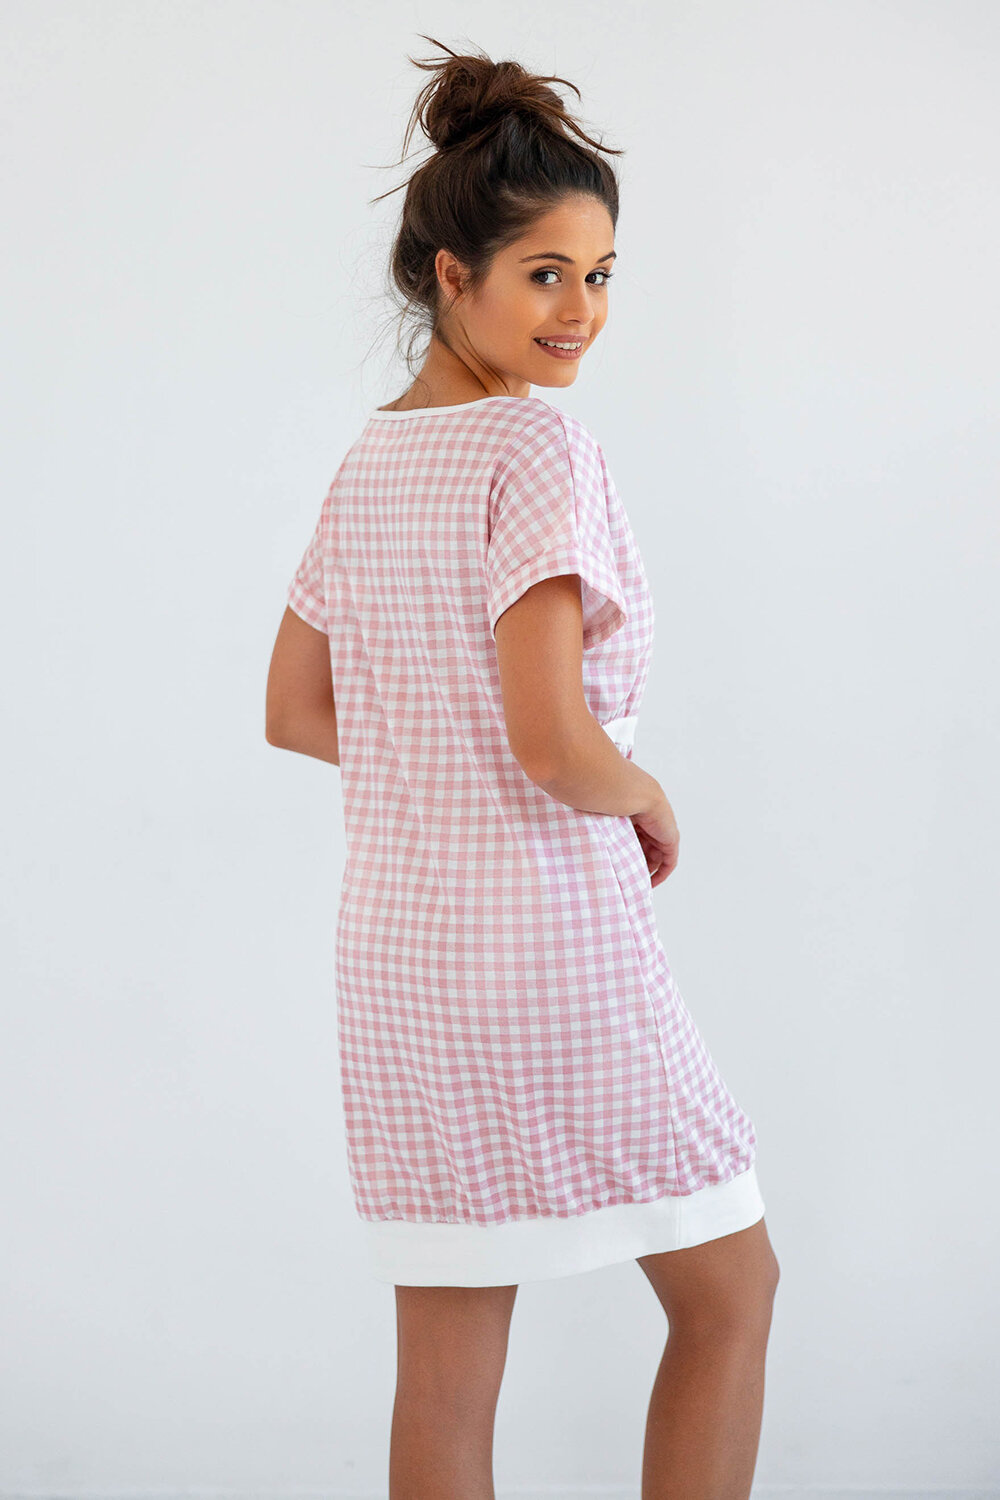 Сорочка женская SENSIS Annika, розовый, хлопок 100% (Размер: M) - фотография № 2